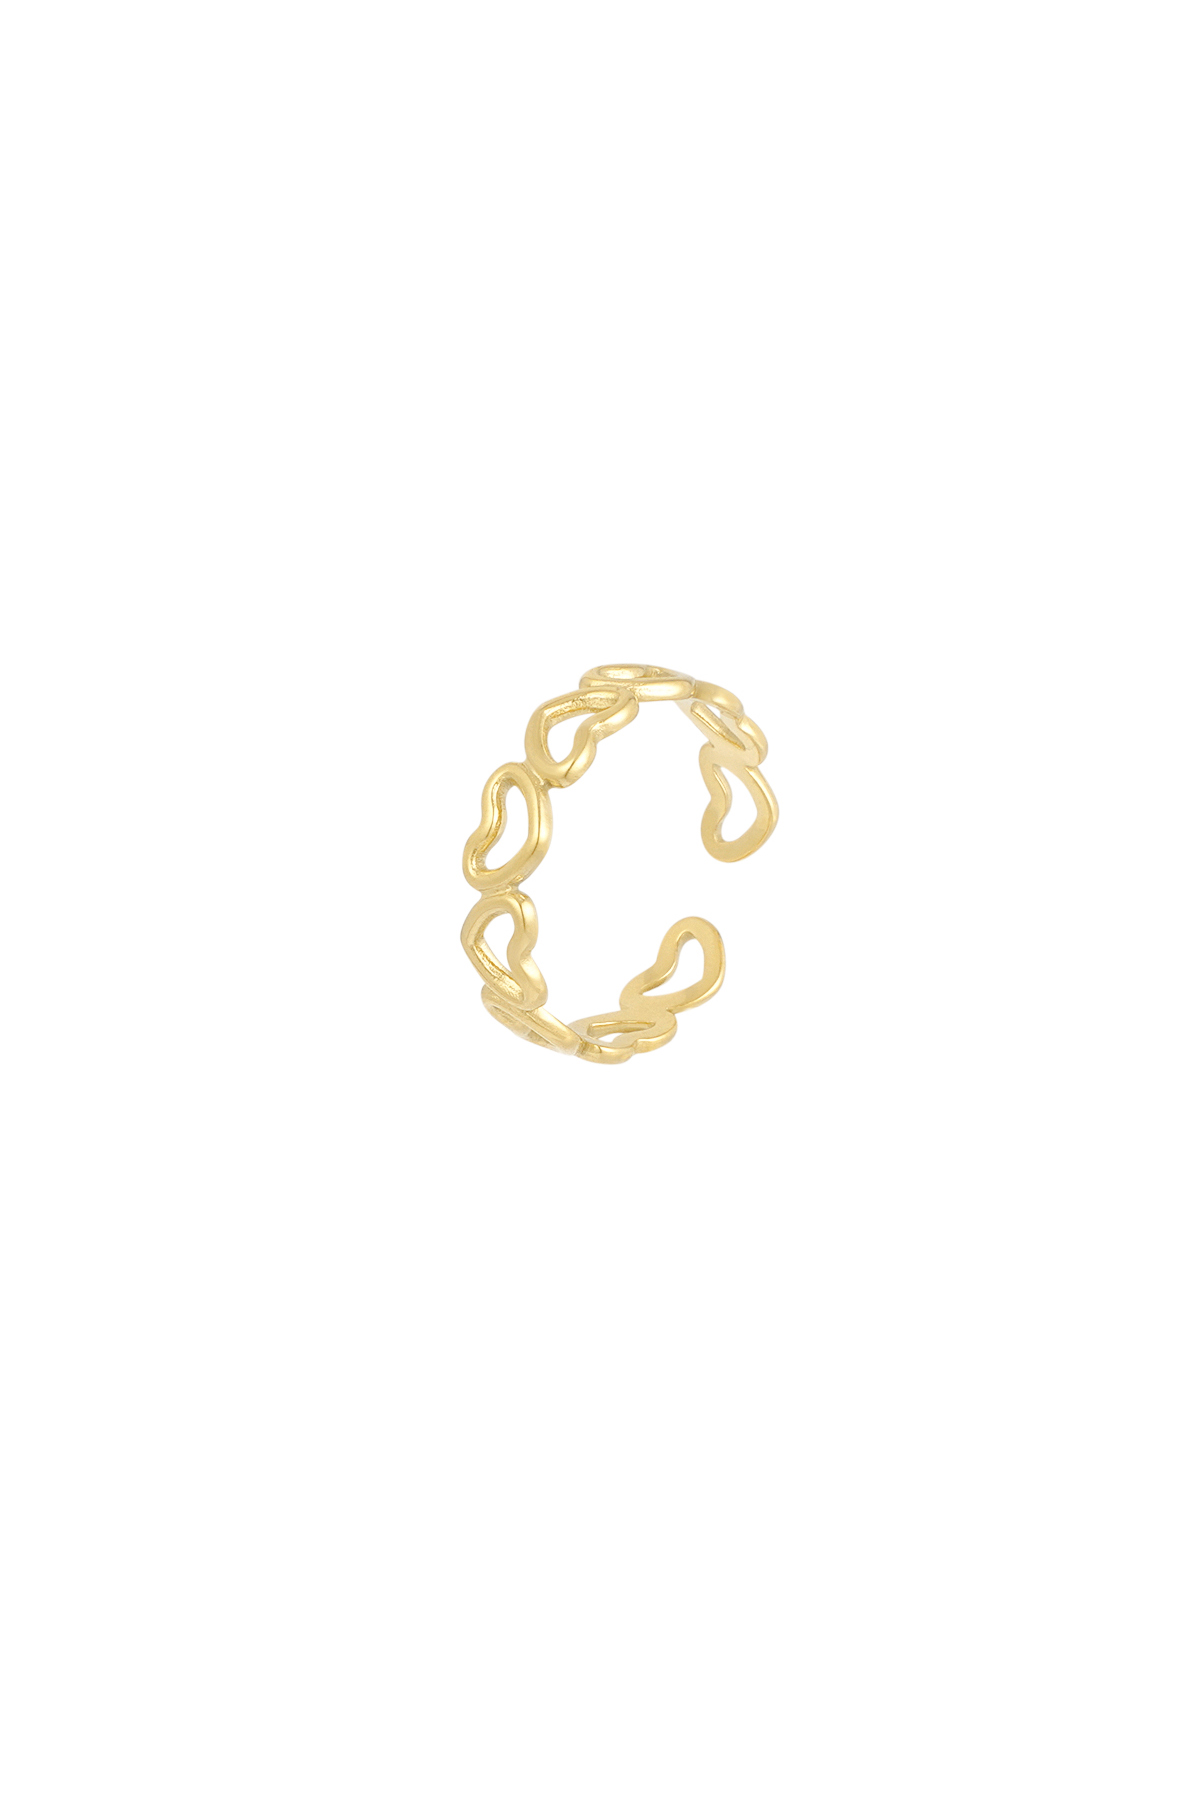 Yüzüğün her yeri sevgiyle dolu - altın  h5 Resim3